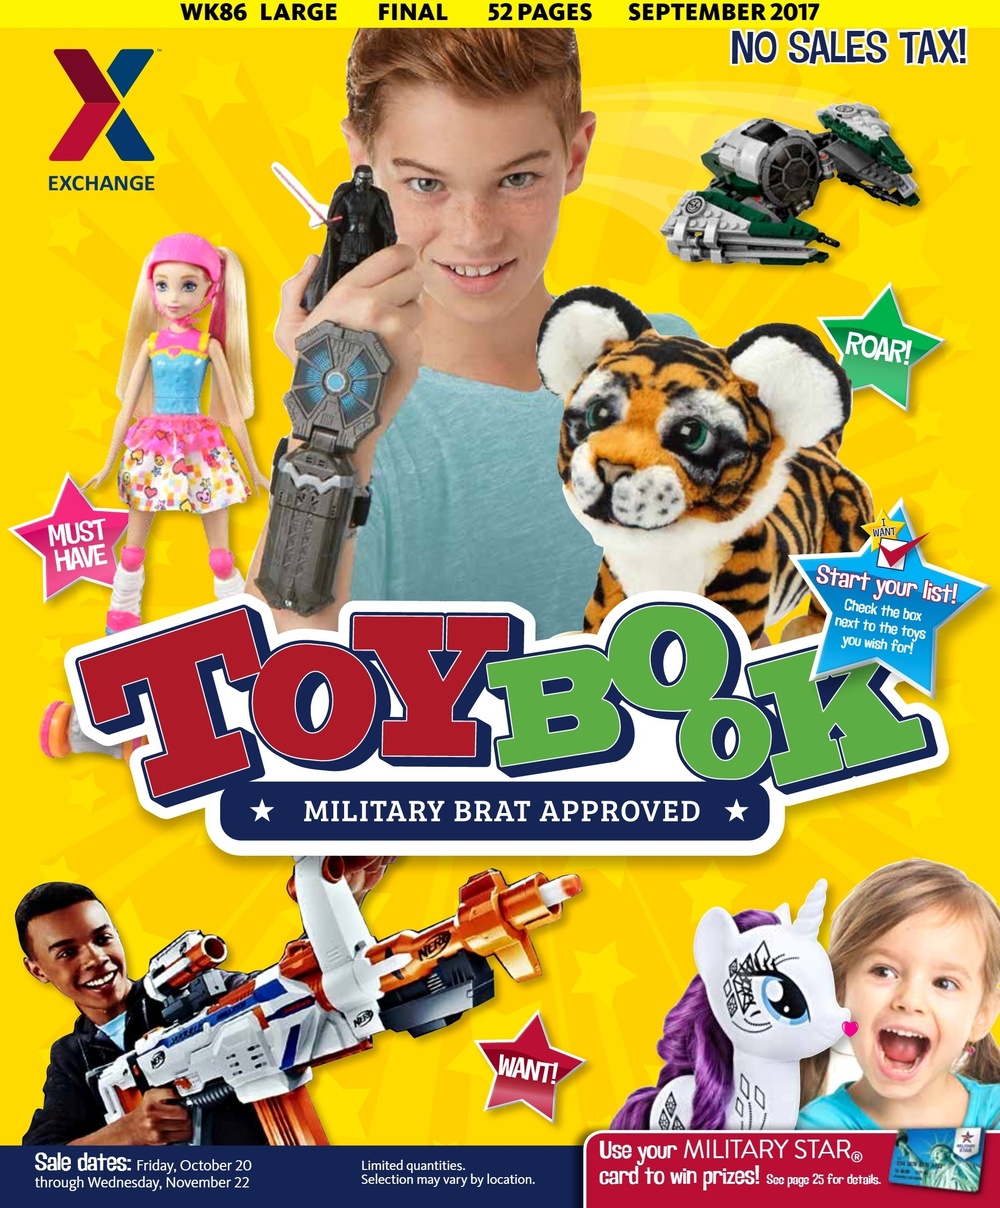 2017 Exchange Toyland Toybook